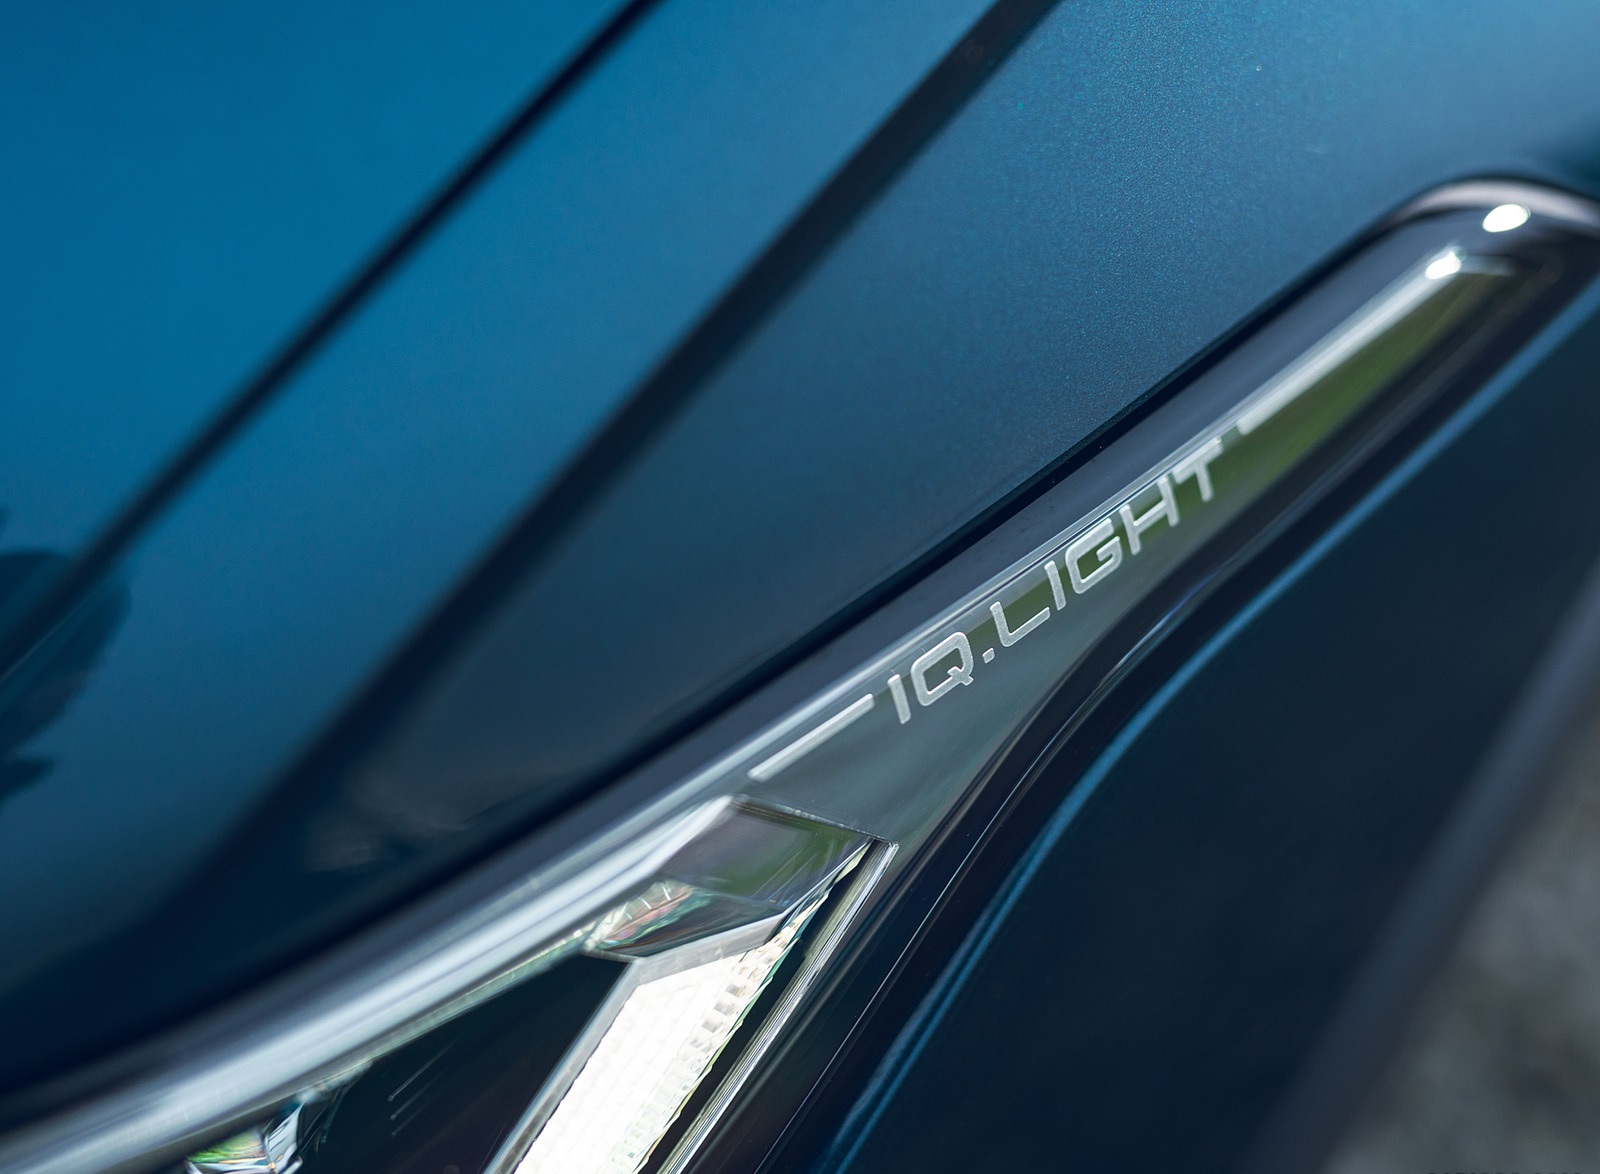 2021 Volkswagen Tiguan R-Line (UK-Spec) Headlight Wallpapers #52 of 112